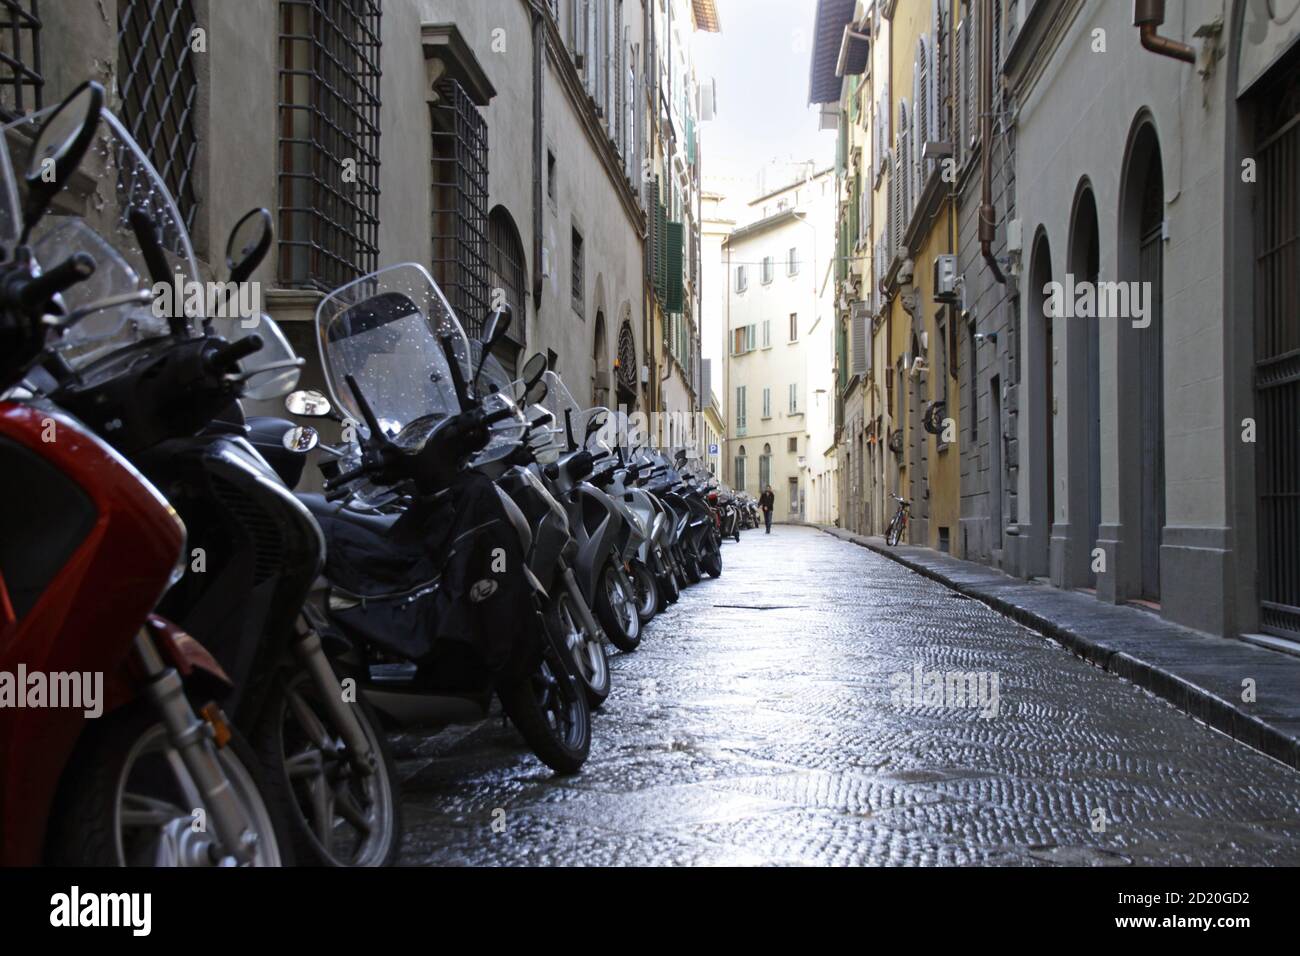 Petite allée avec une rangée de motos garées à Florence, Italie Banque D'Images